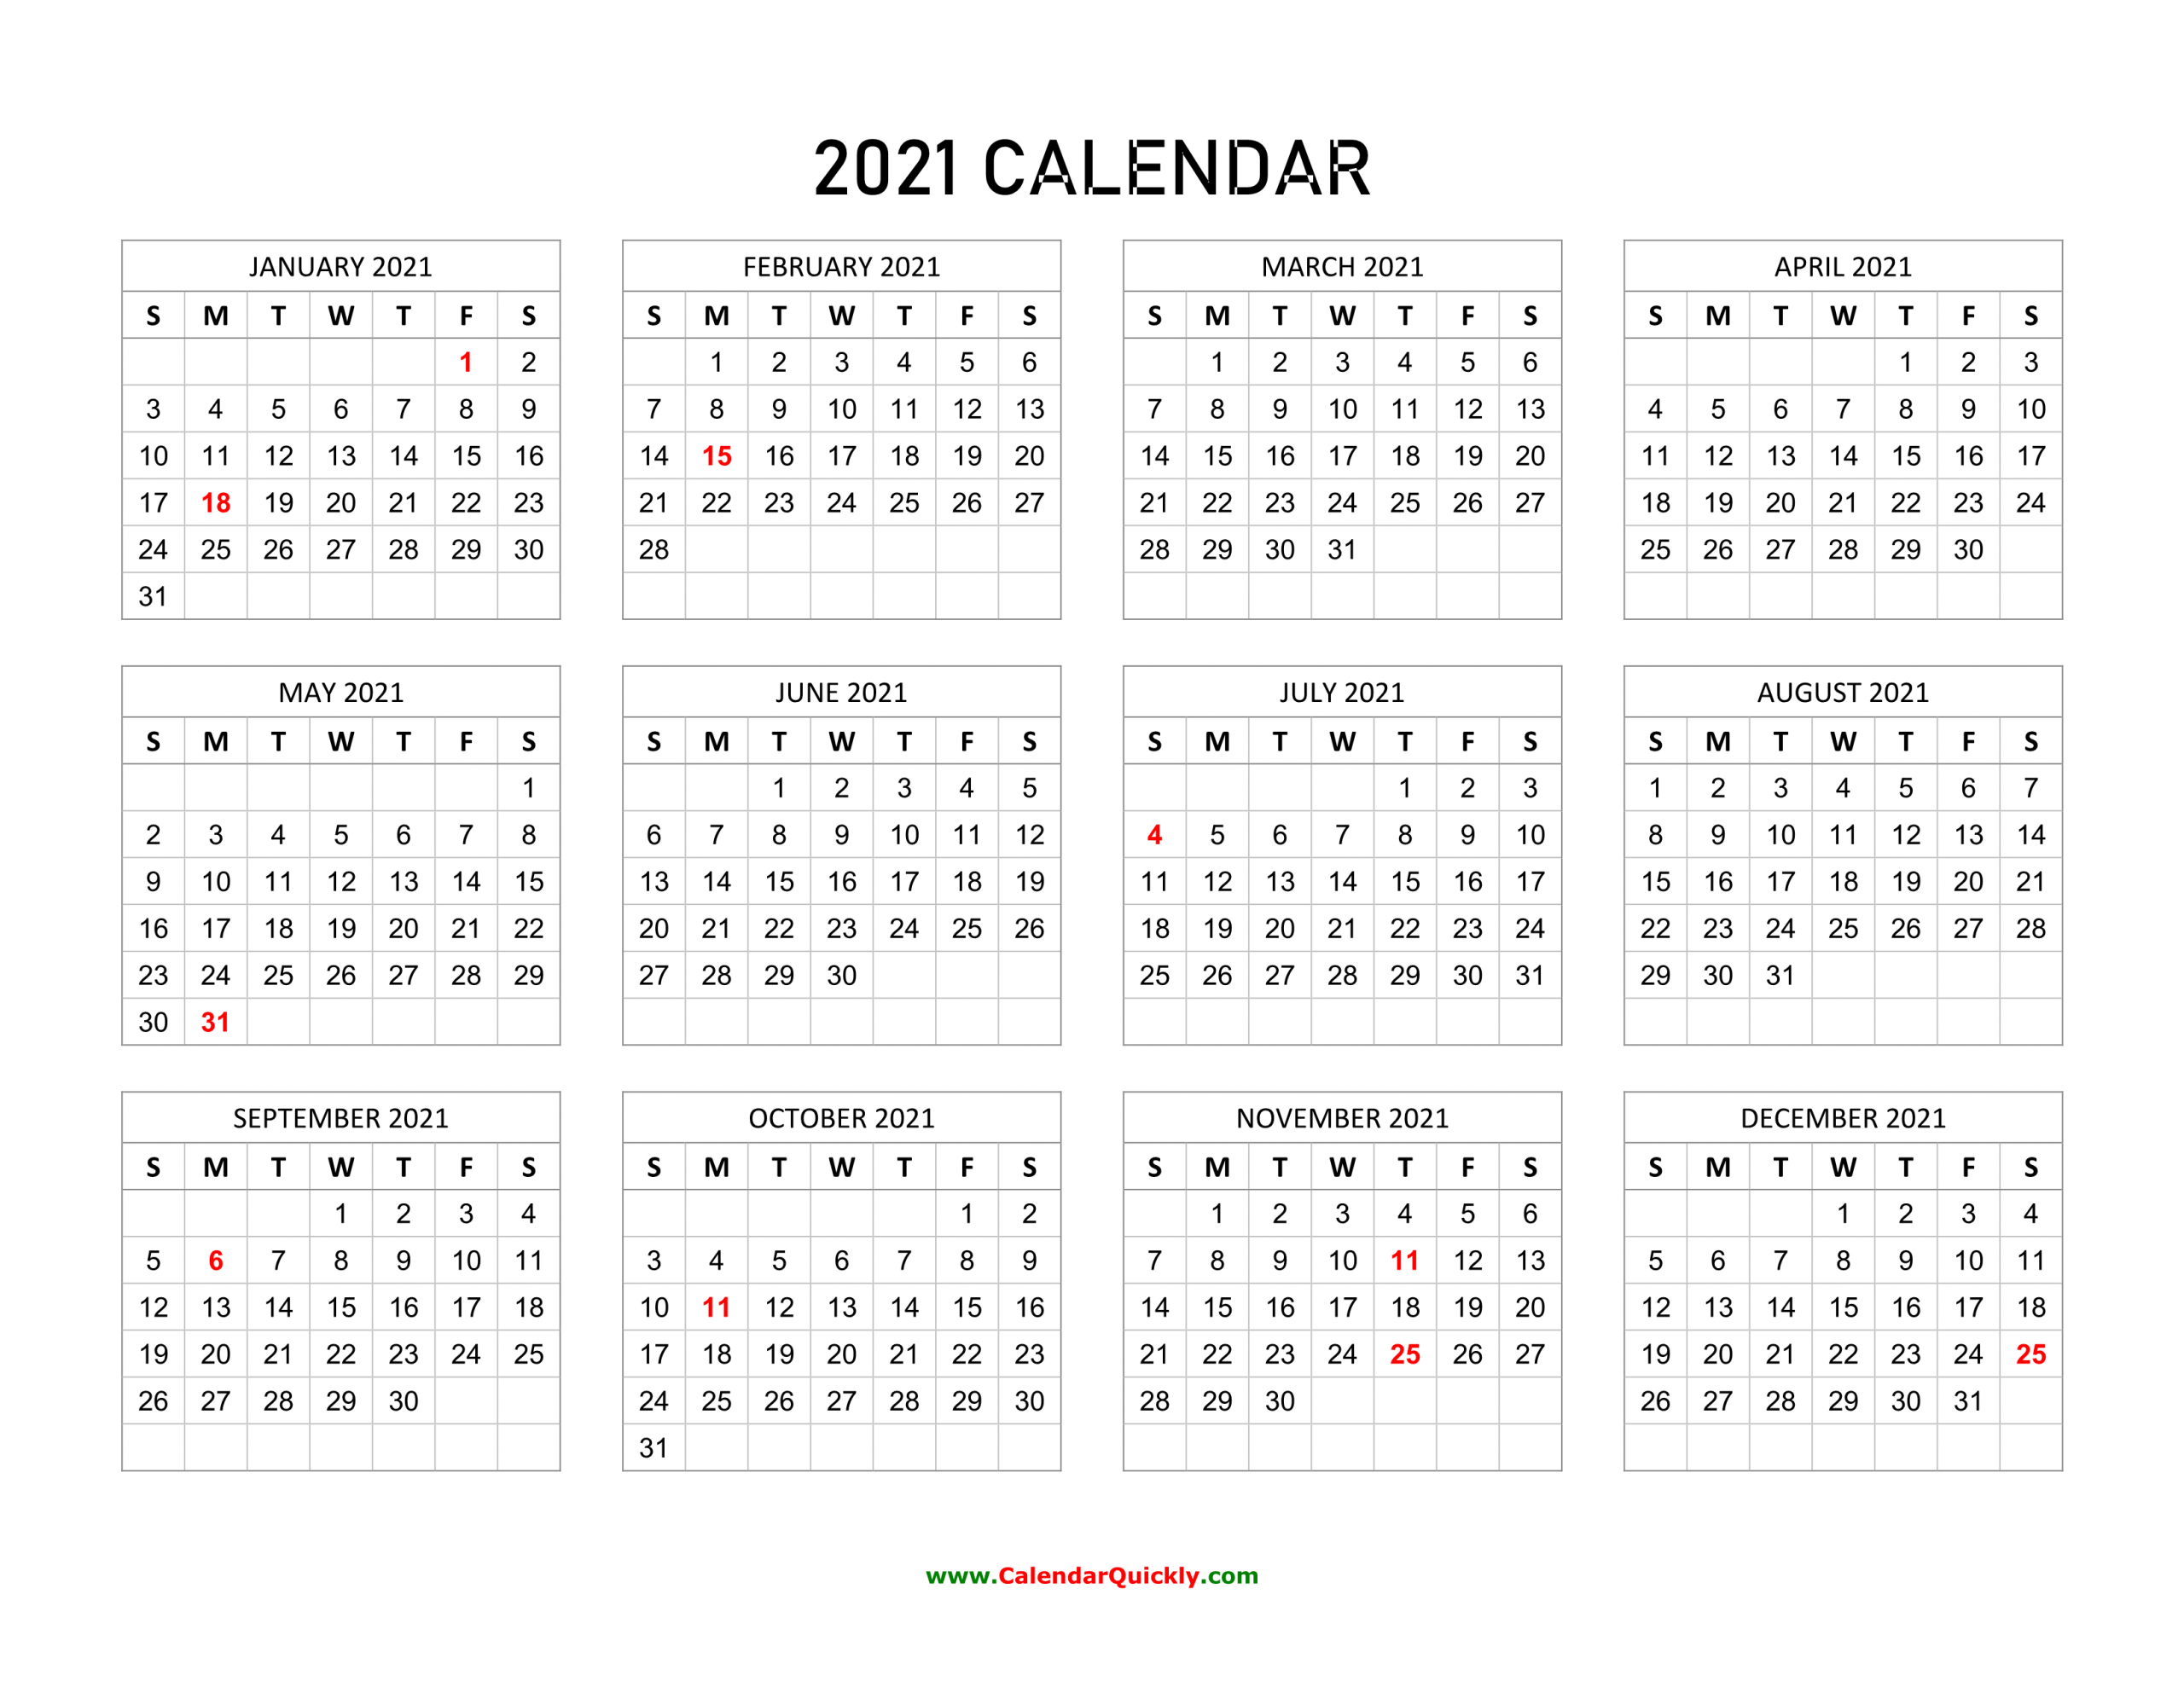 2021 Calendar With Holidays | Calendar Quickly